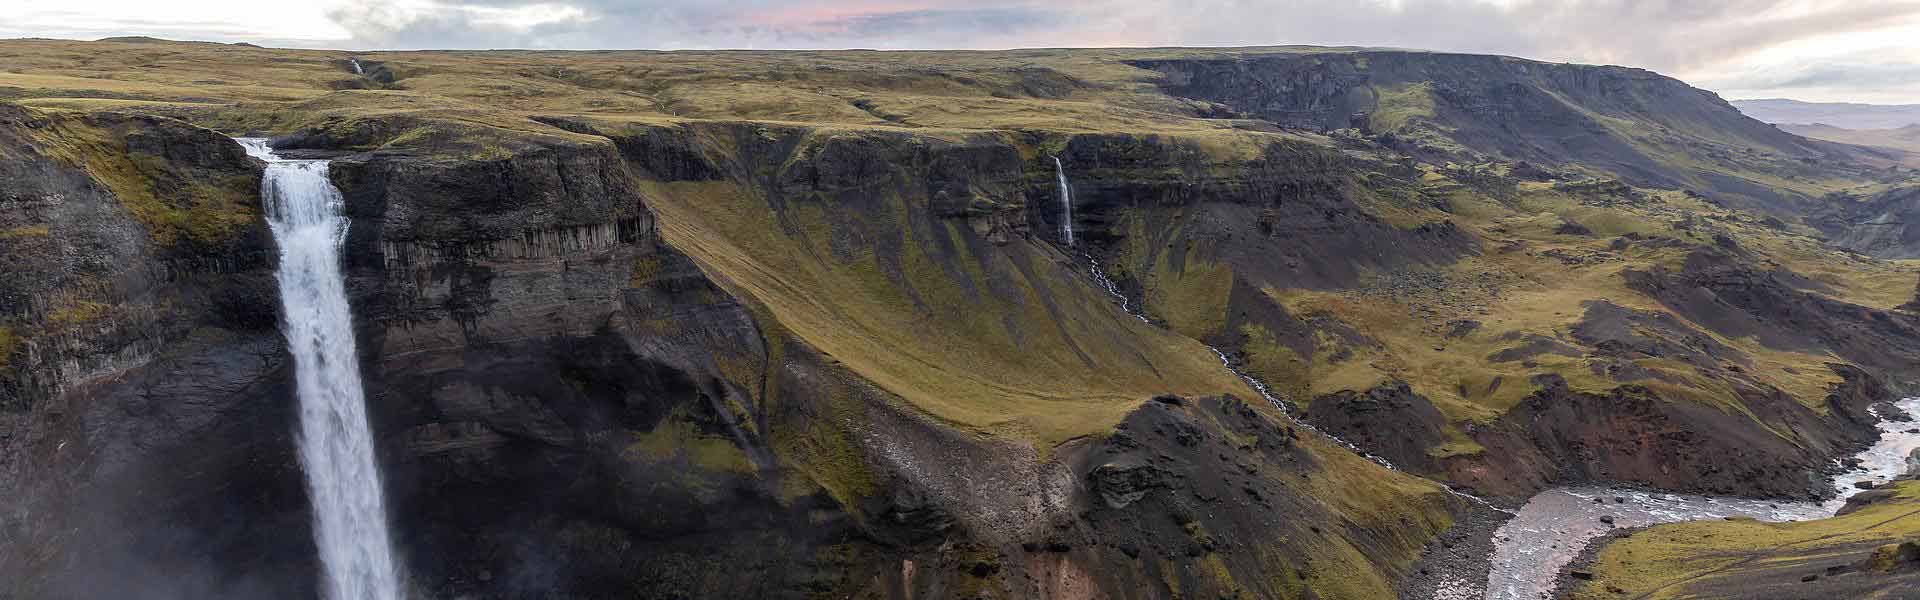 Ontdek de vele watervallen van IJsland tijdens een camperreis met Victoria CamperHolidays